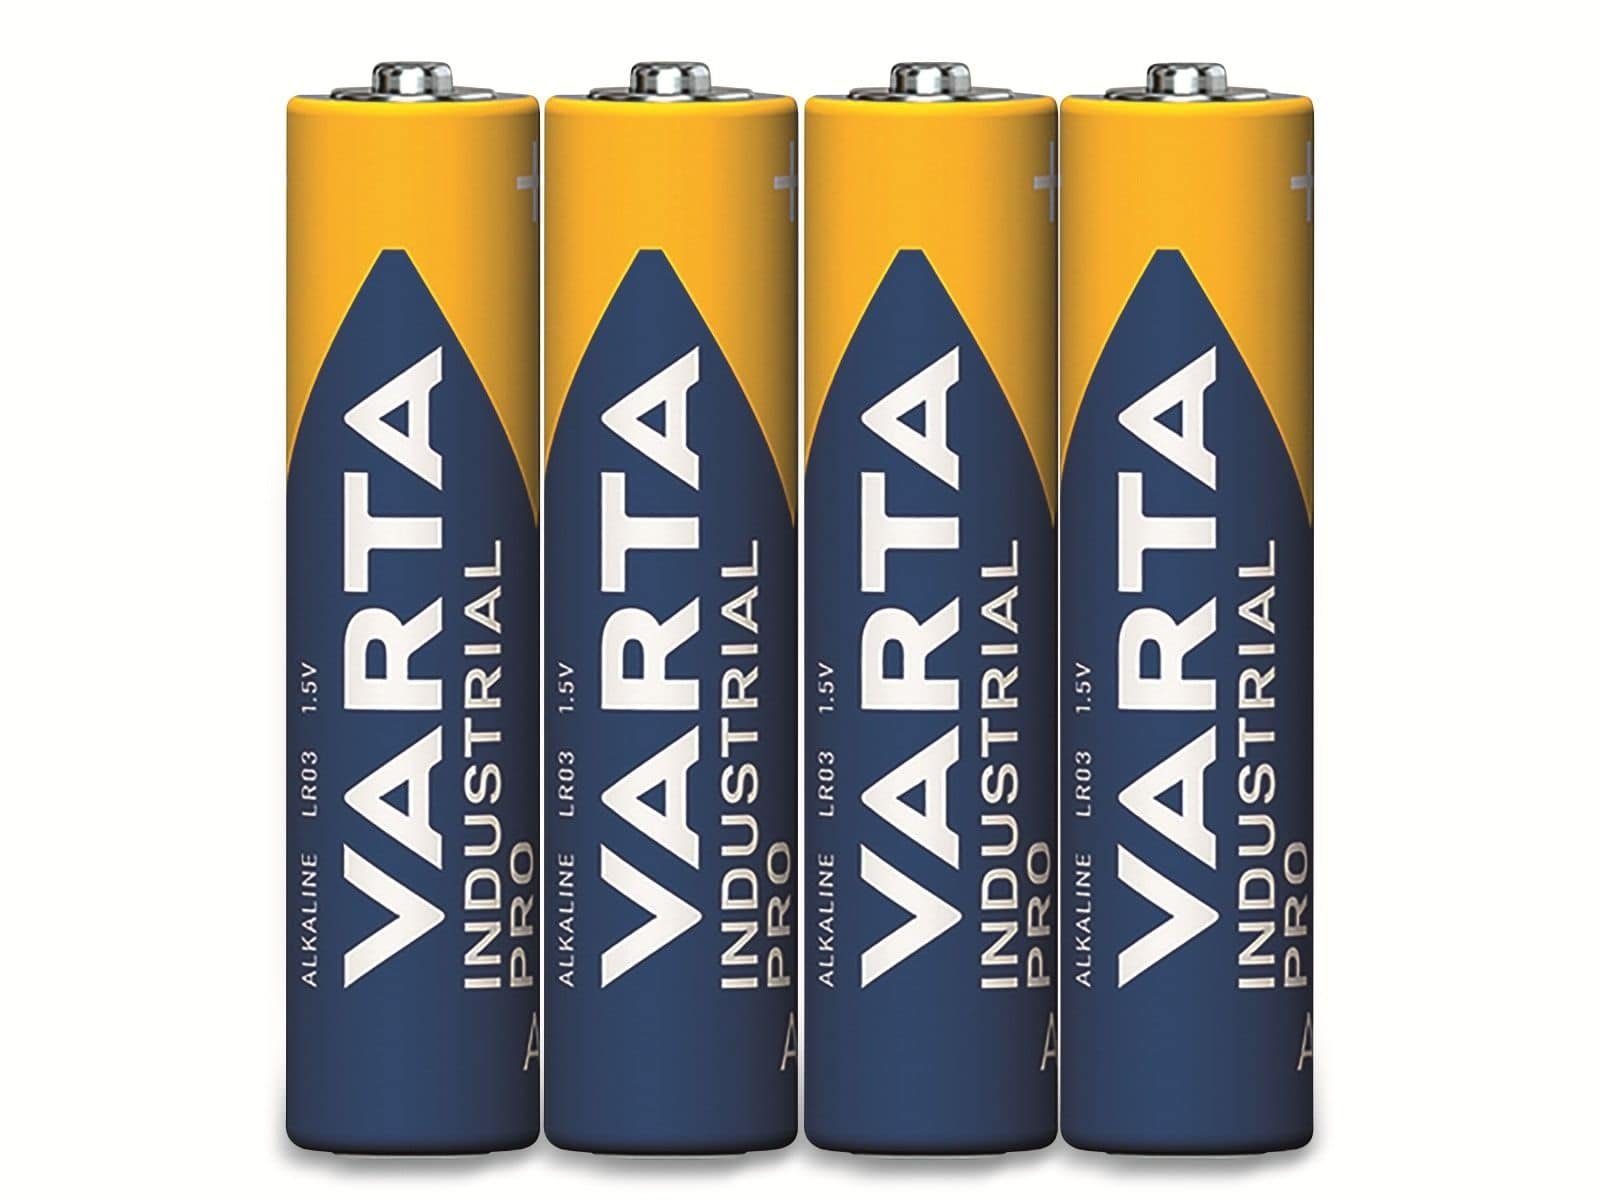 Alkaline, Batterie Batterie LR03, 1.5V VARTA AAA, Micro, VARTA